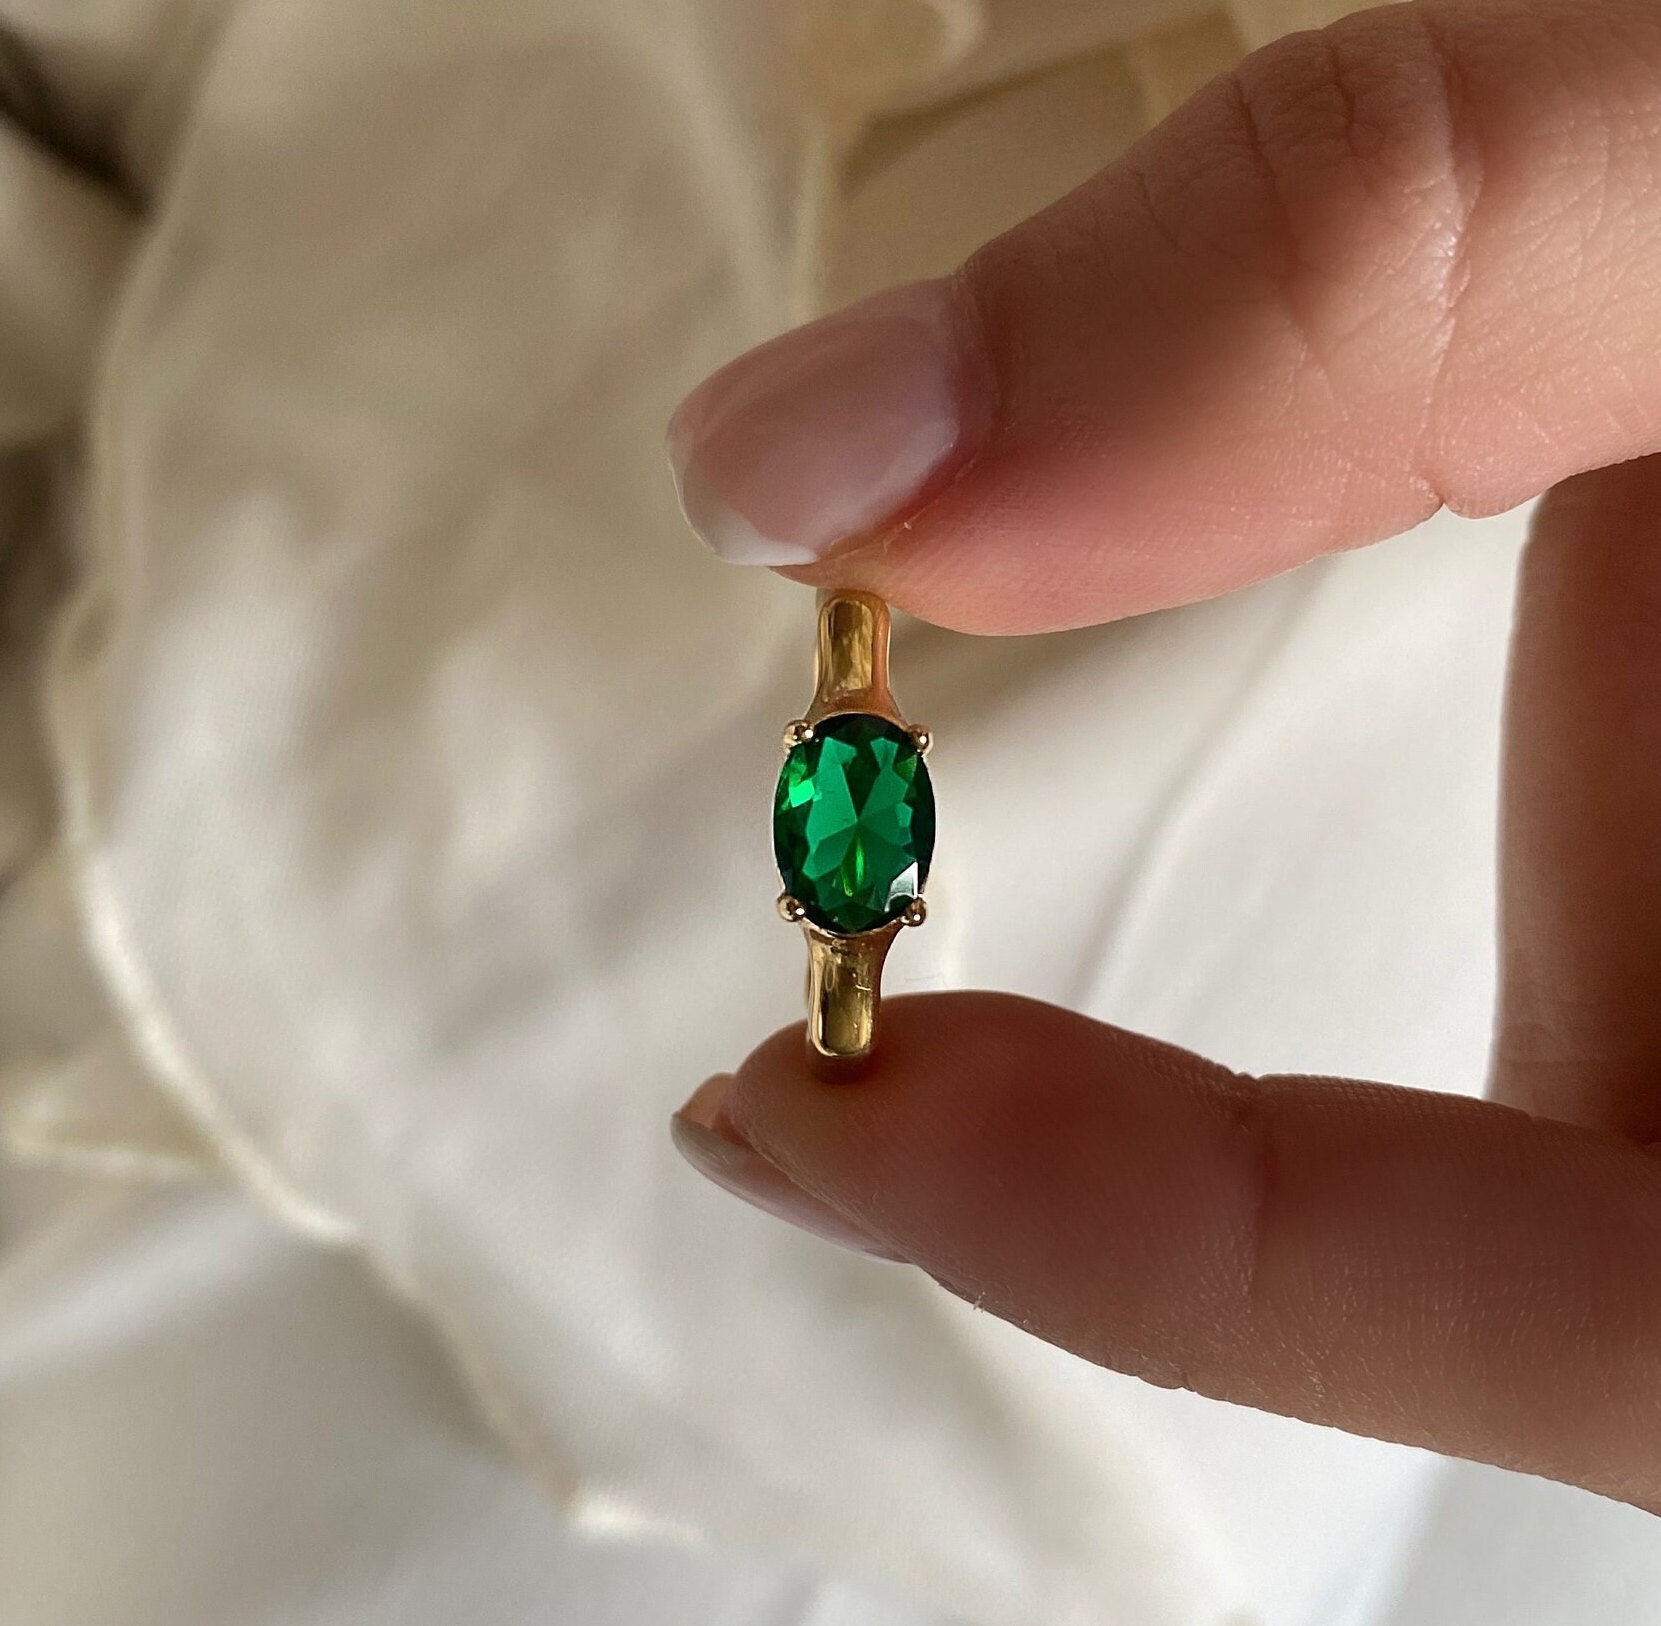 Green stone ring for men | Mens ring designs, Rings for men, Gold ring  designs